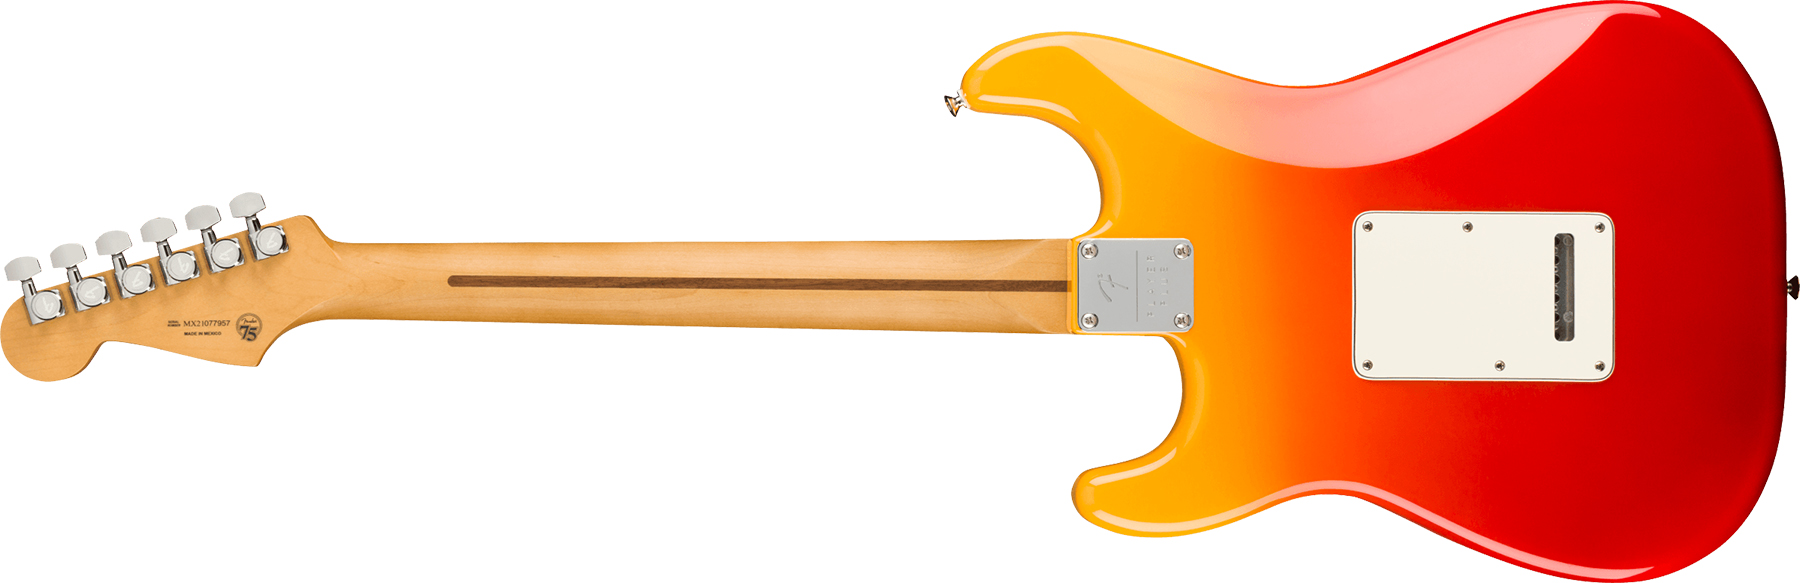 Fender Strat Player Plus Lh Gaucher Mex 3s Trem Pf - Tequila Sunrise - E-Gitarre für Linkshänder - Variation 1